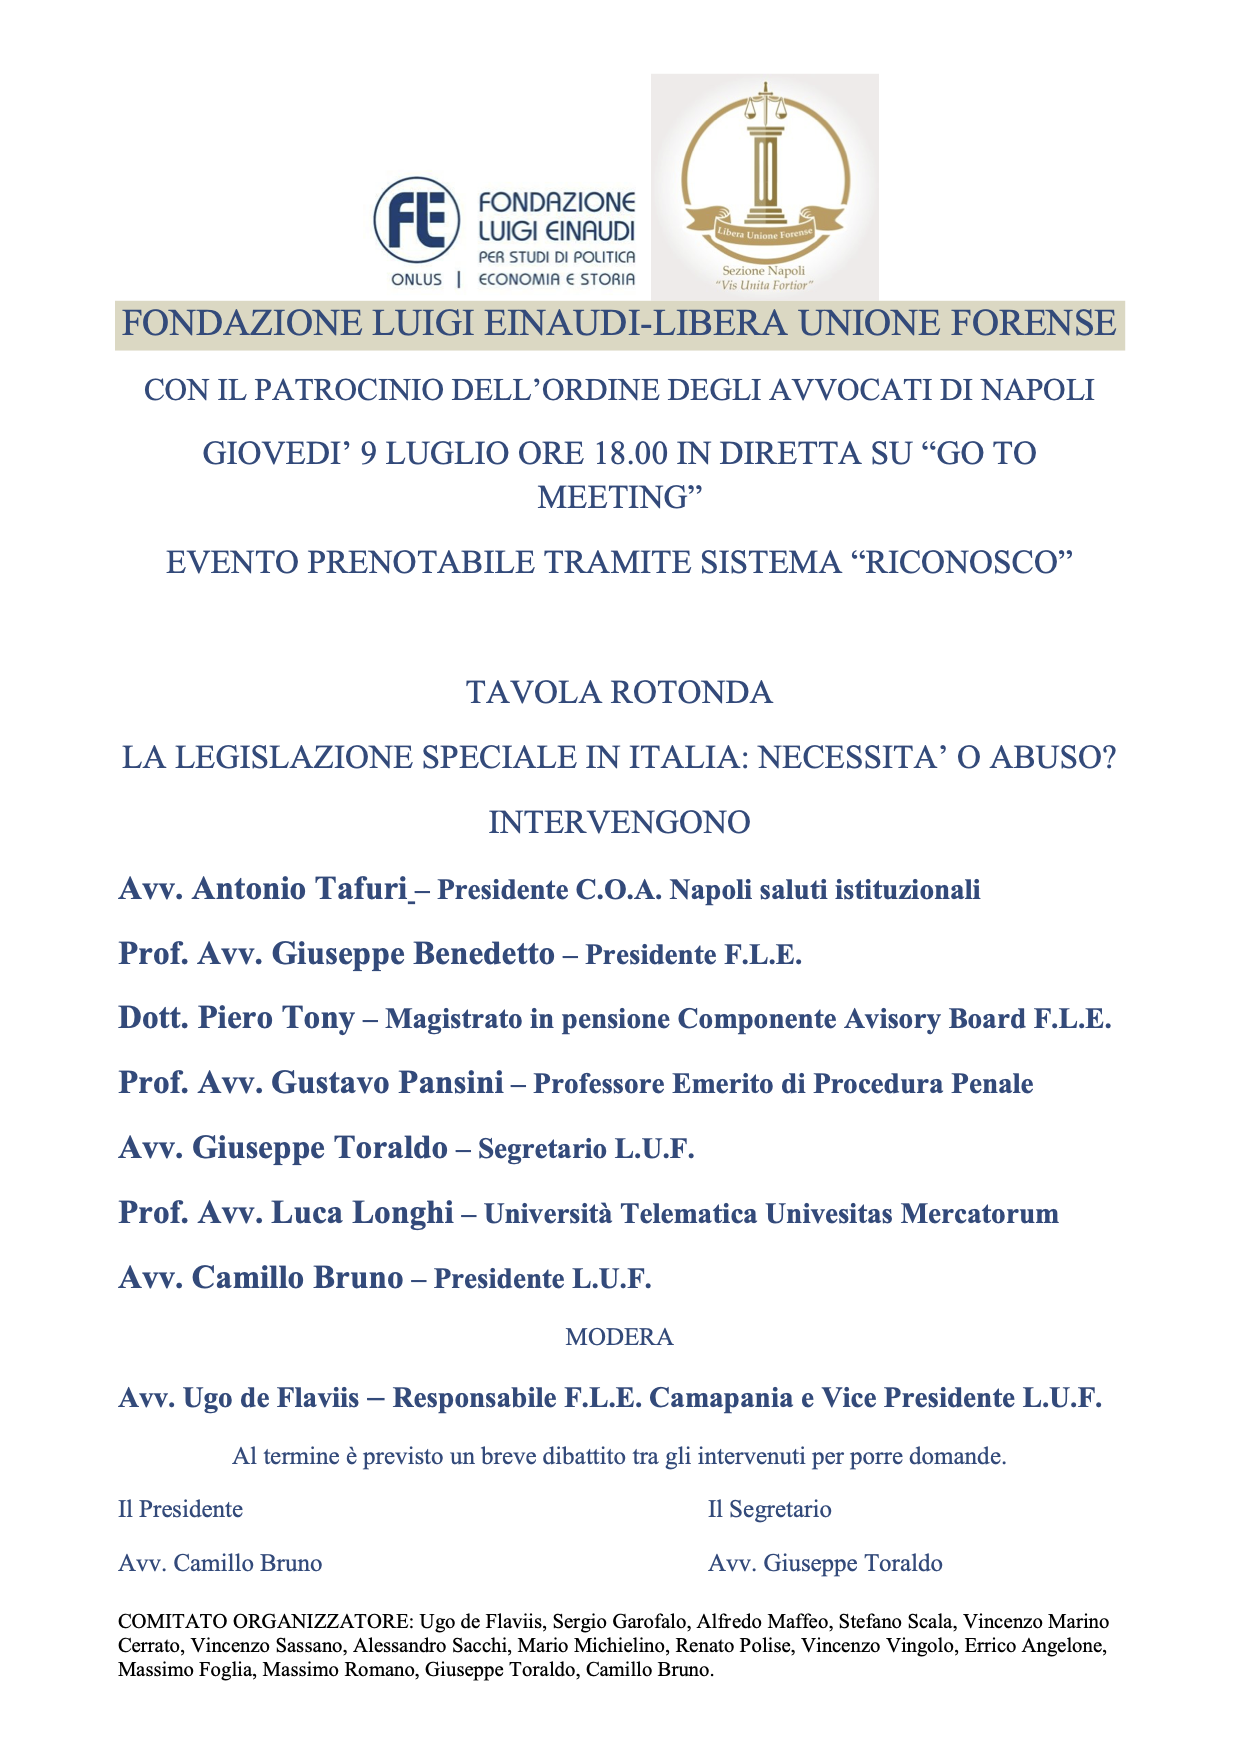 La legislazione speciale in Italia: necessità o abuso?